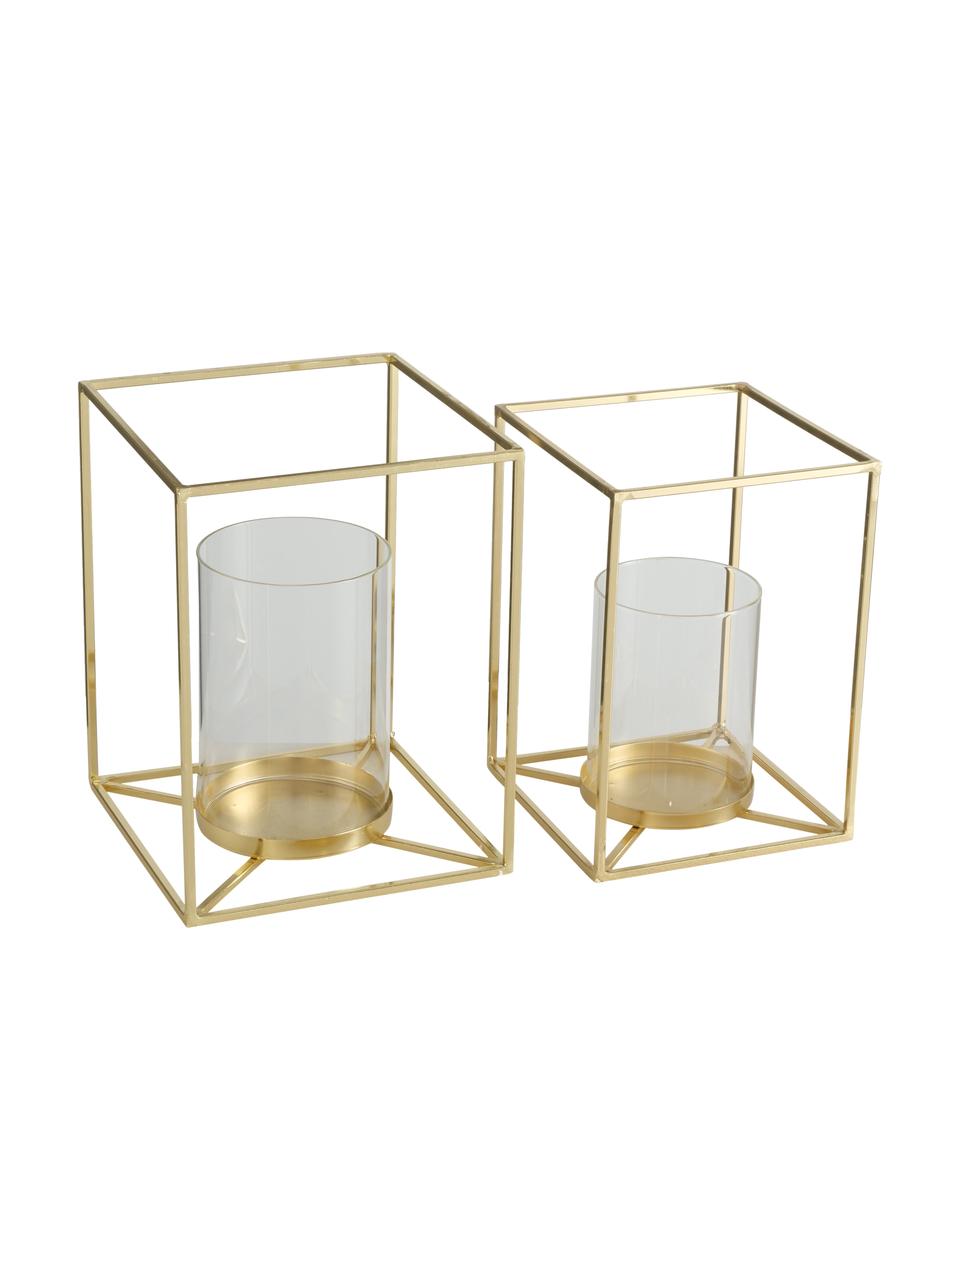 Windlichter-Set Josi, 2-tlg., Gestell: Aluminium, Windlicht: Glas, Goldfarben, Set mit verschiedenen Größen